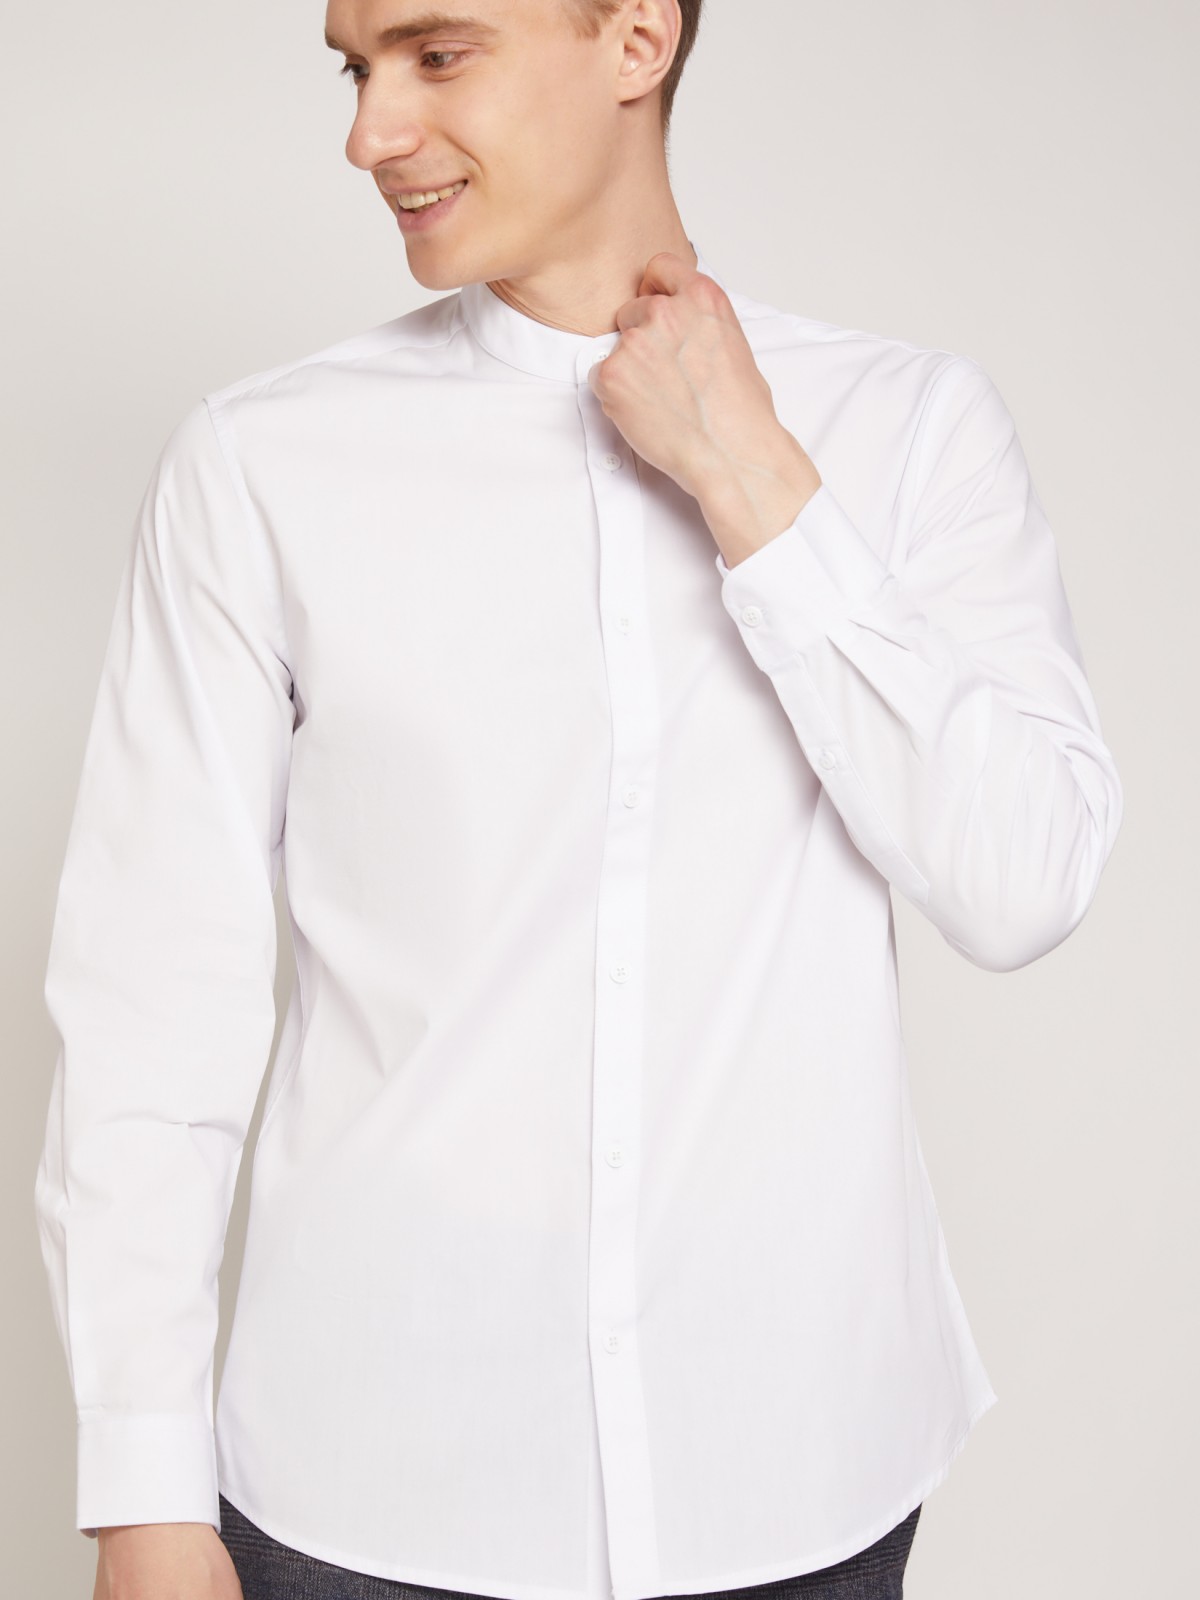 Рубашка с воротником-стойкой zolla 21132217Y012, цвет белый, размер XS - фото 3